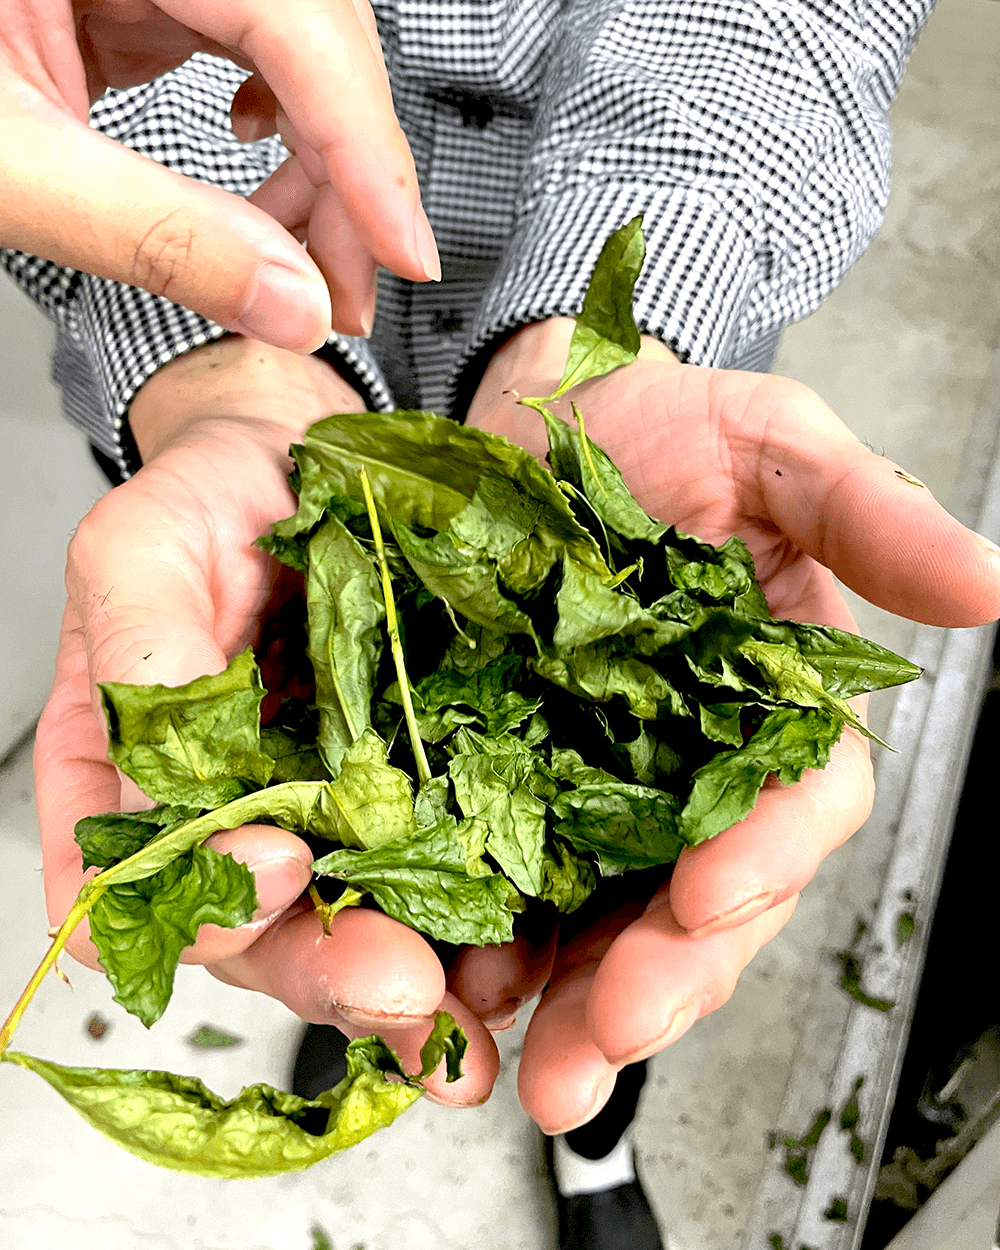 Farmer holding green tea leaves in hands.